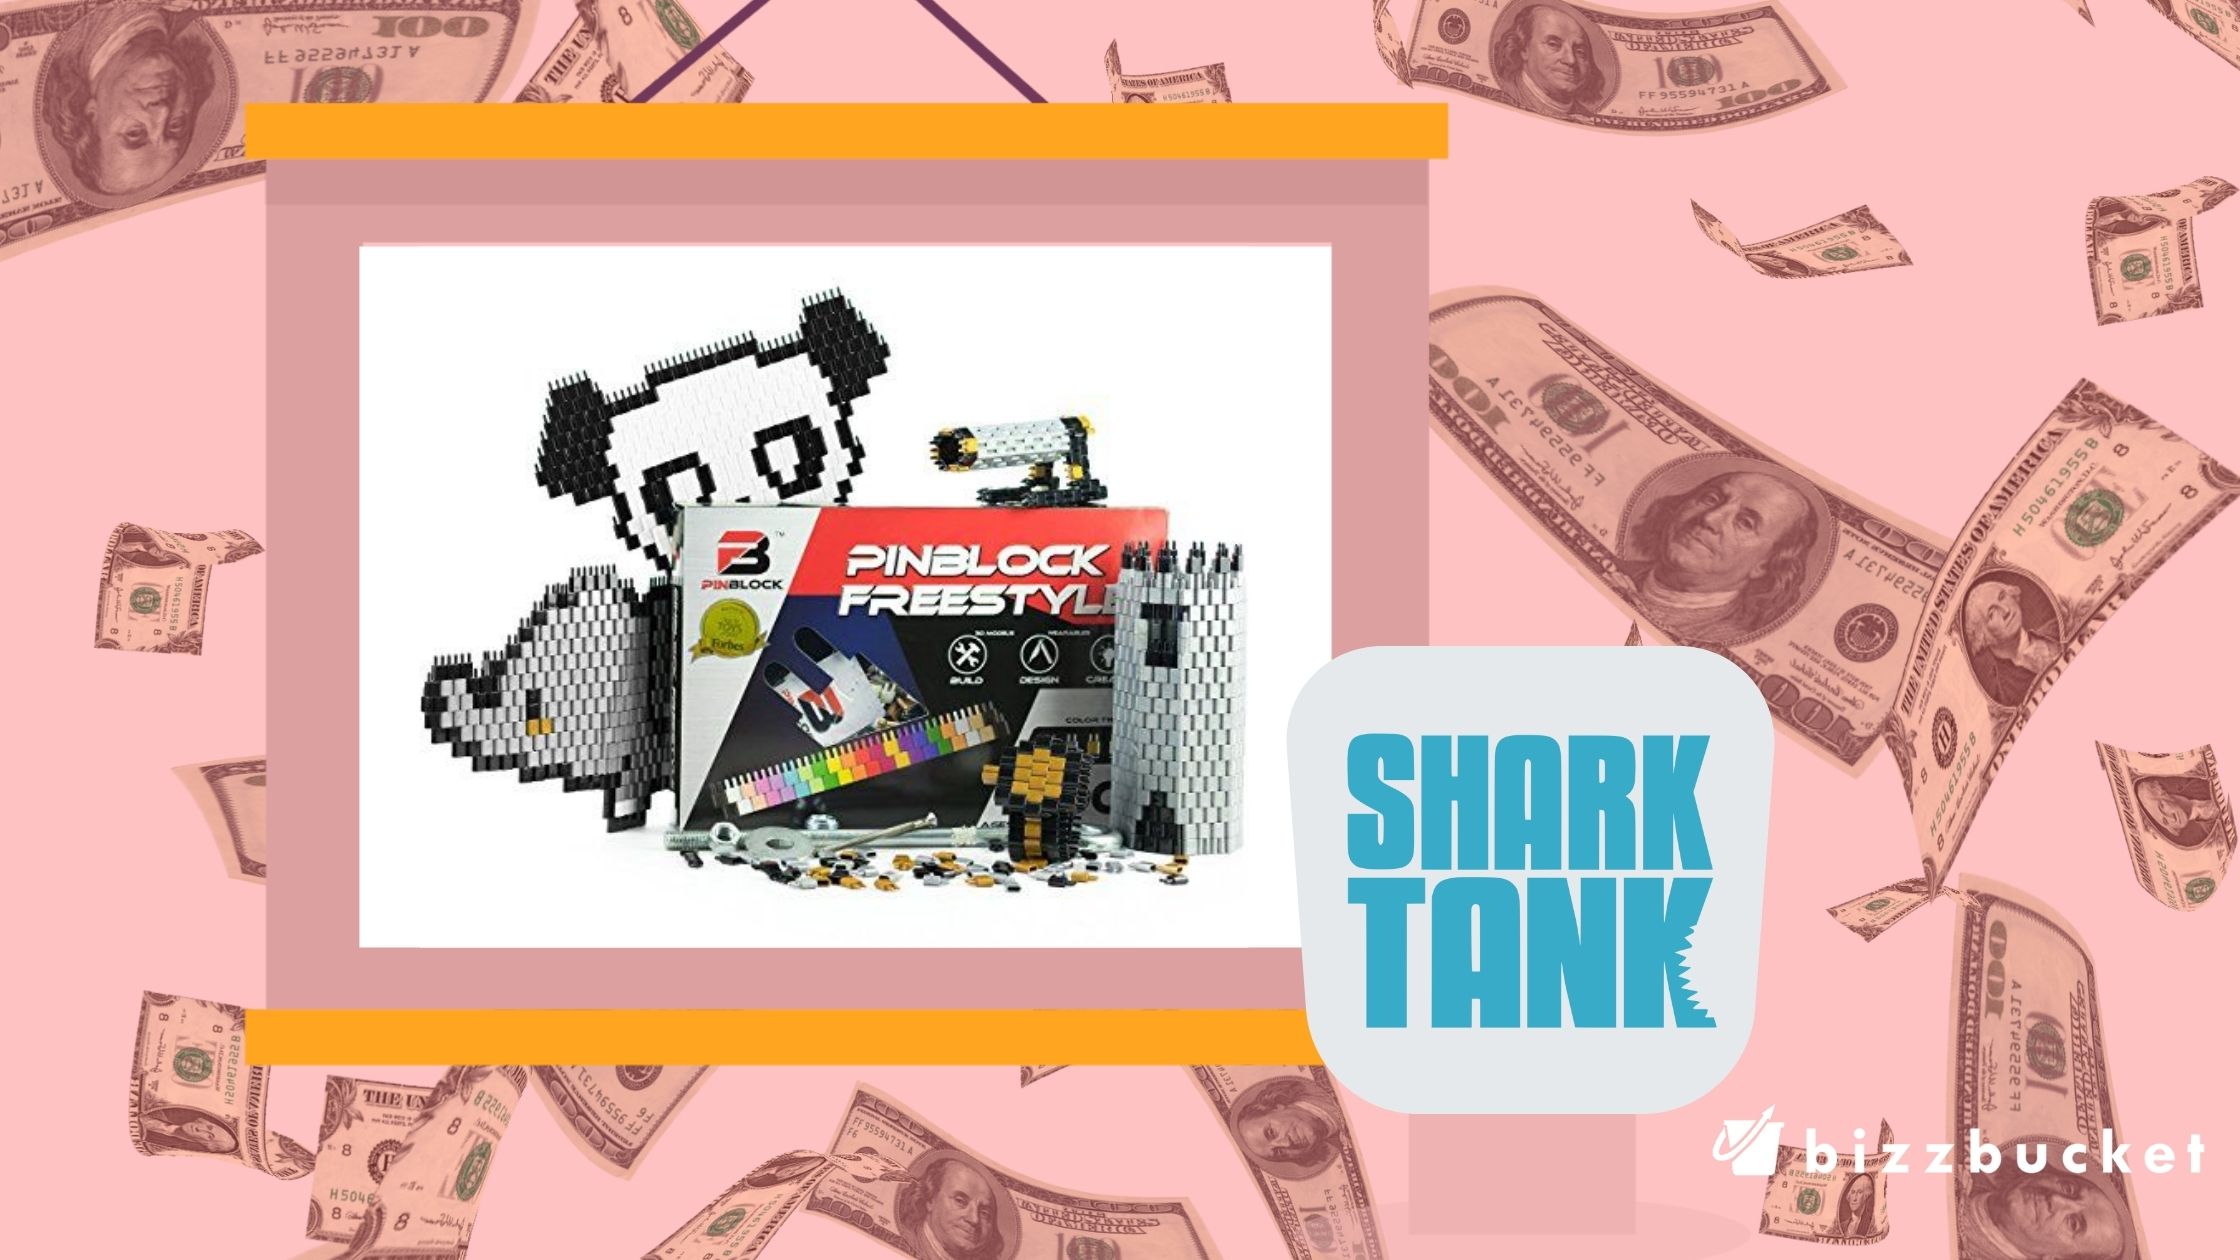 Pinblock shark tank update